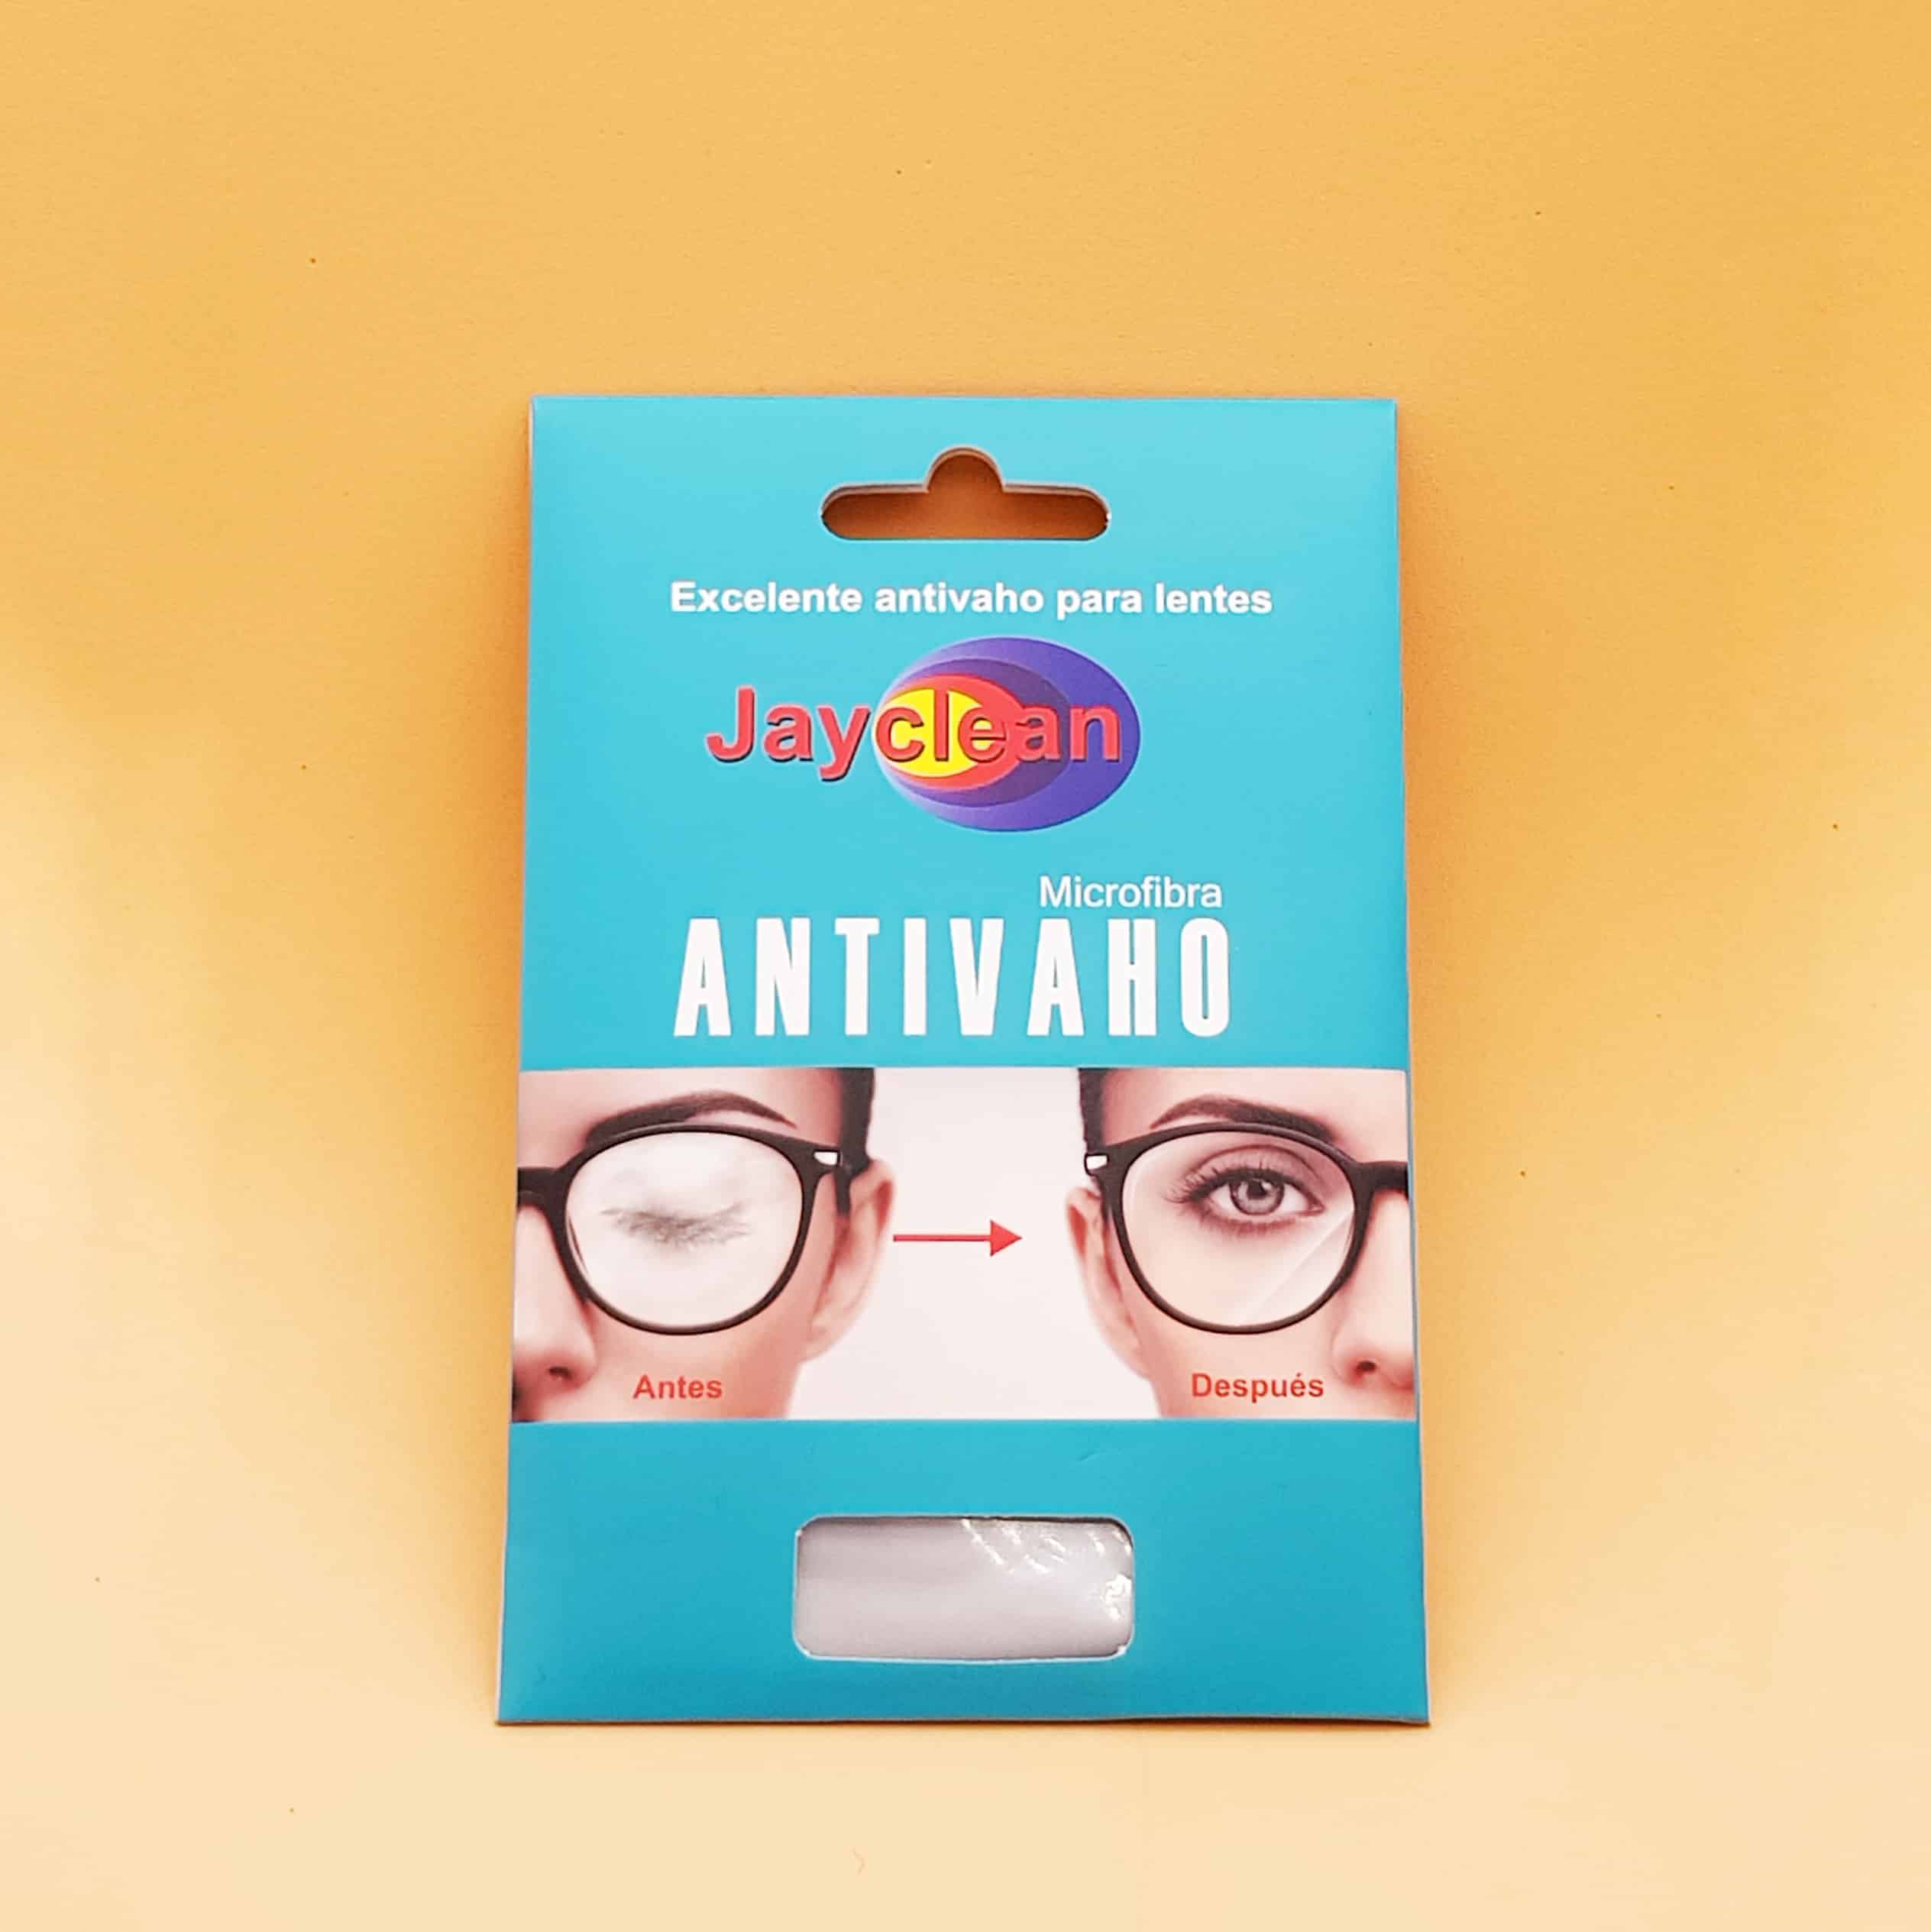 Productos antivaho para evitar que se empañen tus gafas. Oticonfort.